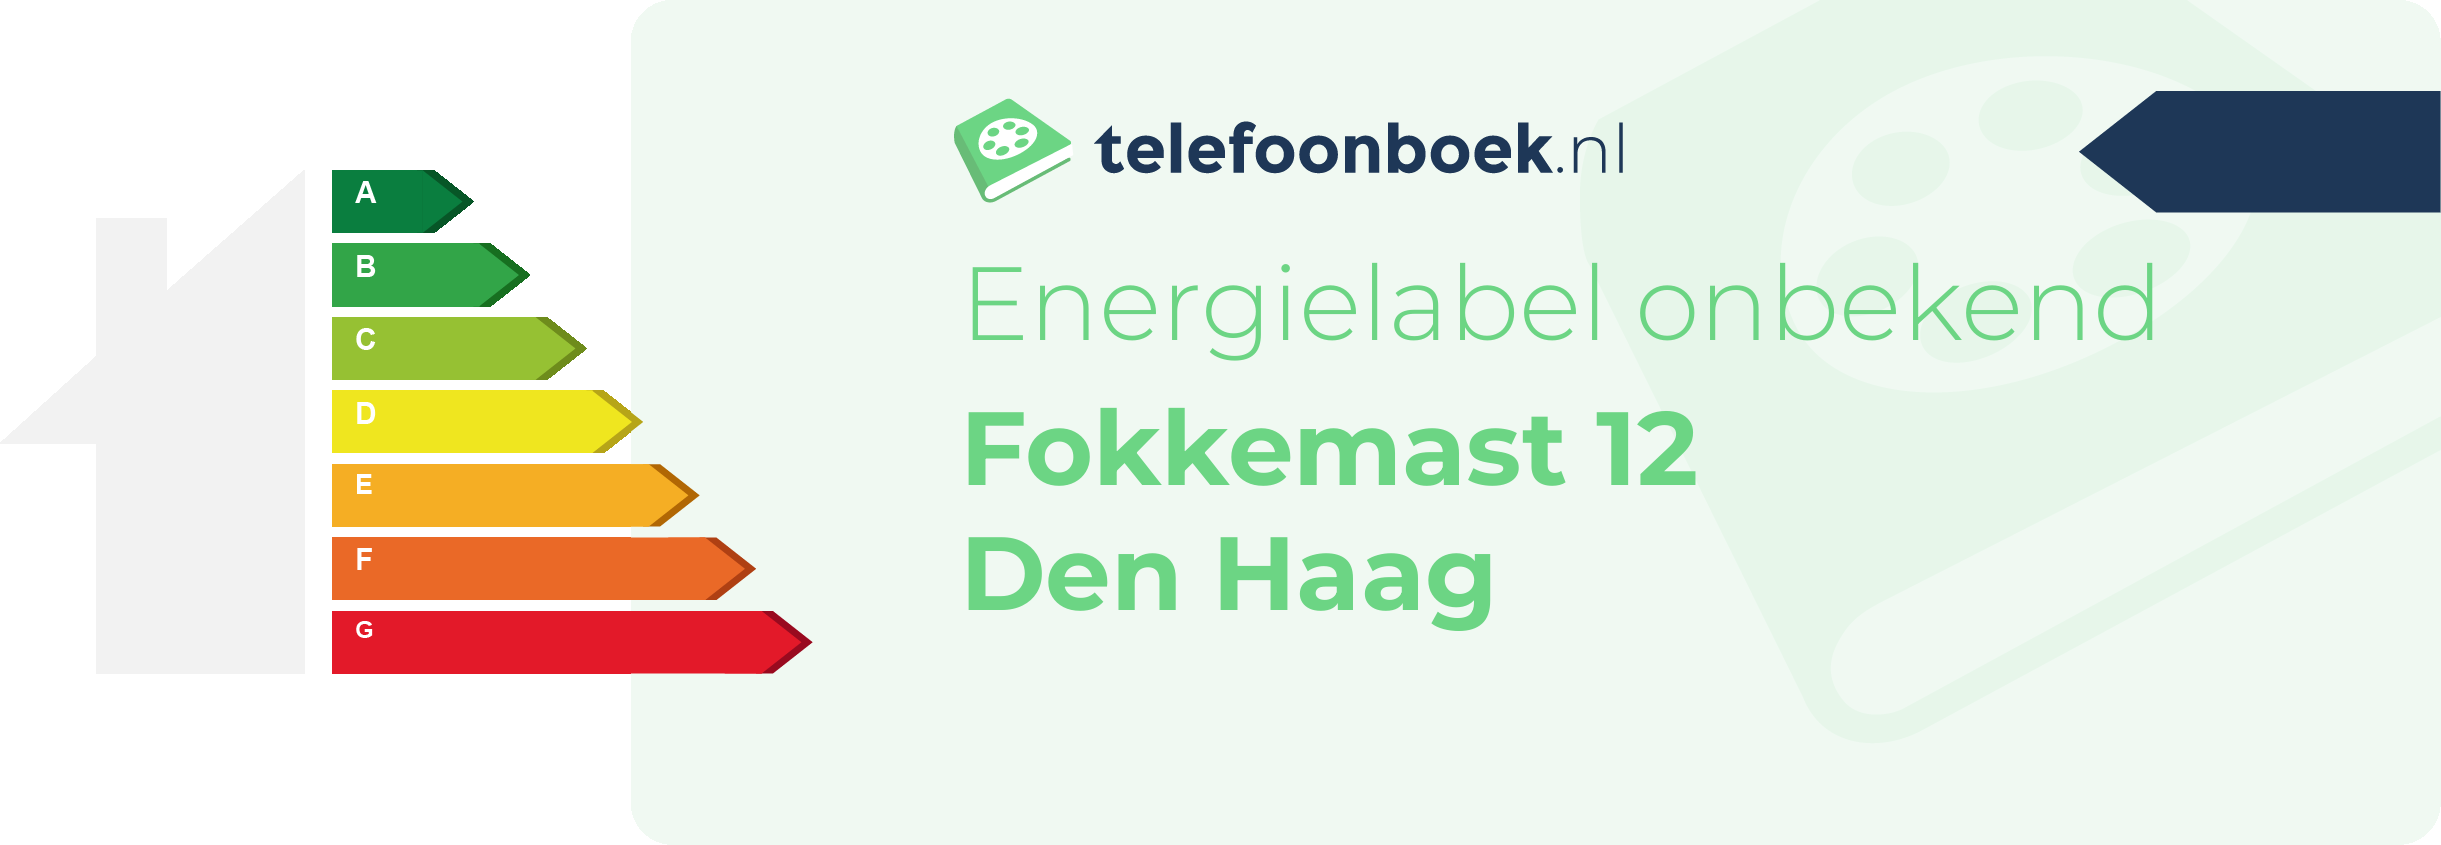 Energielabel Fokkemast 12 Den Haag